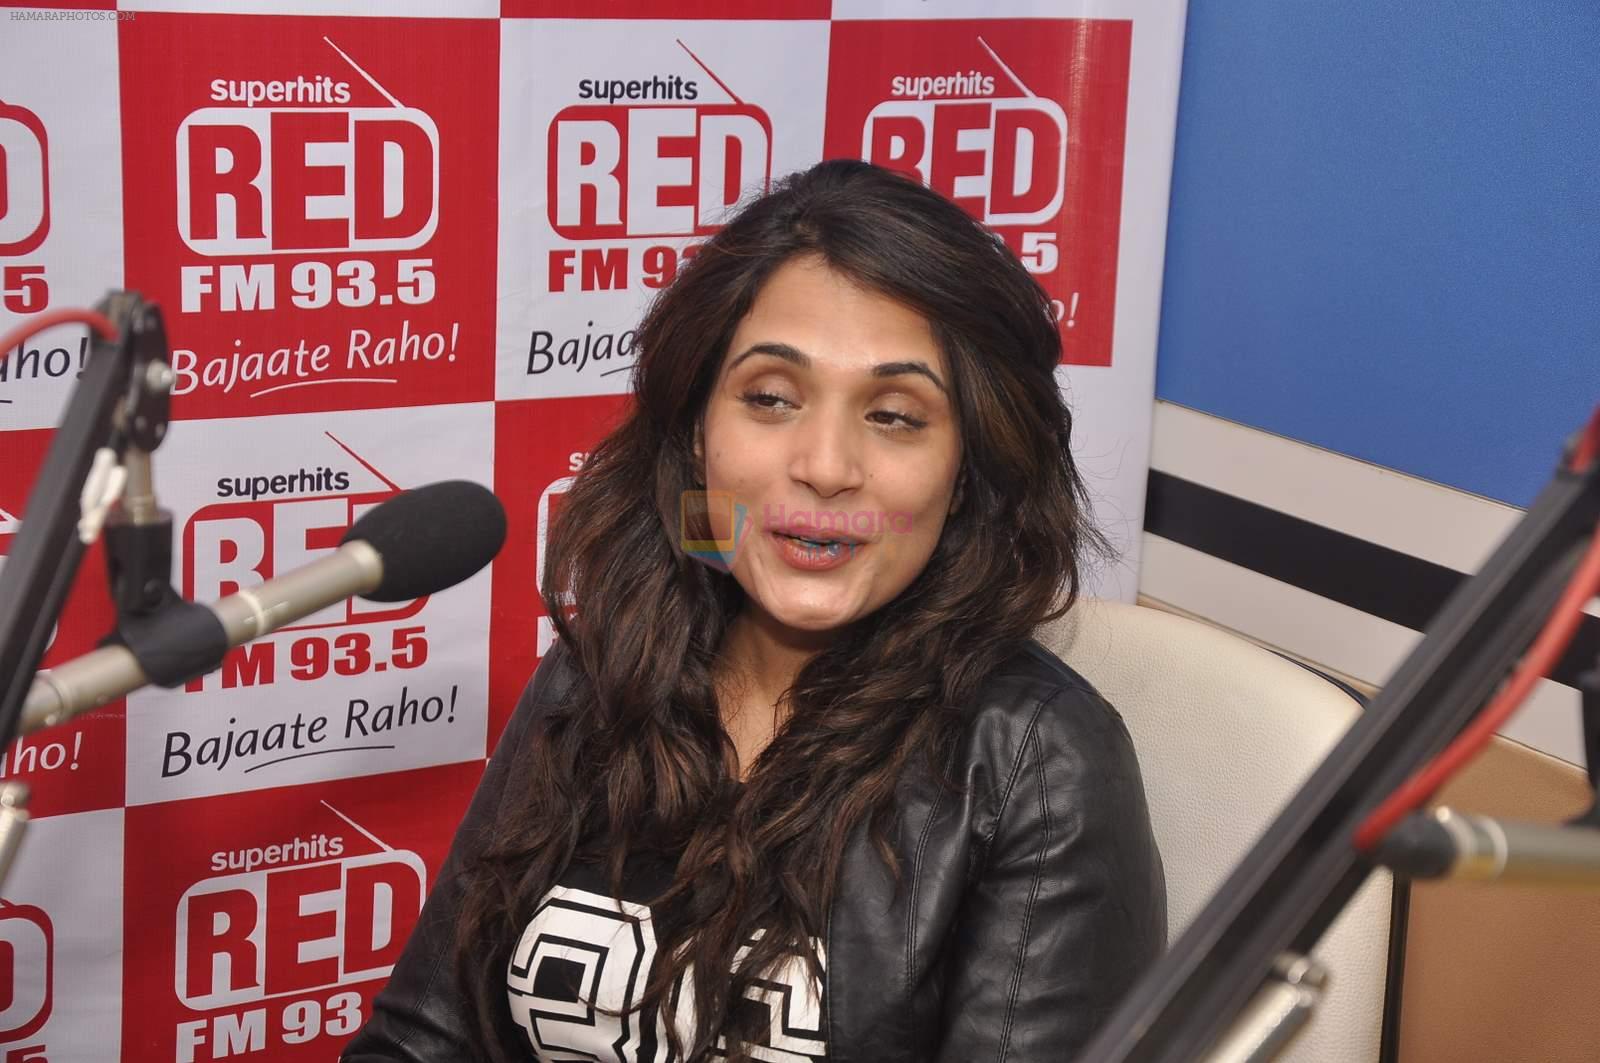 Richa Chadda at Red FM on 8th July 2015